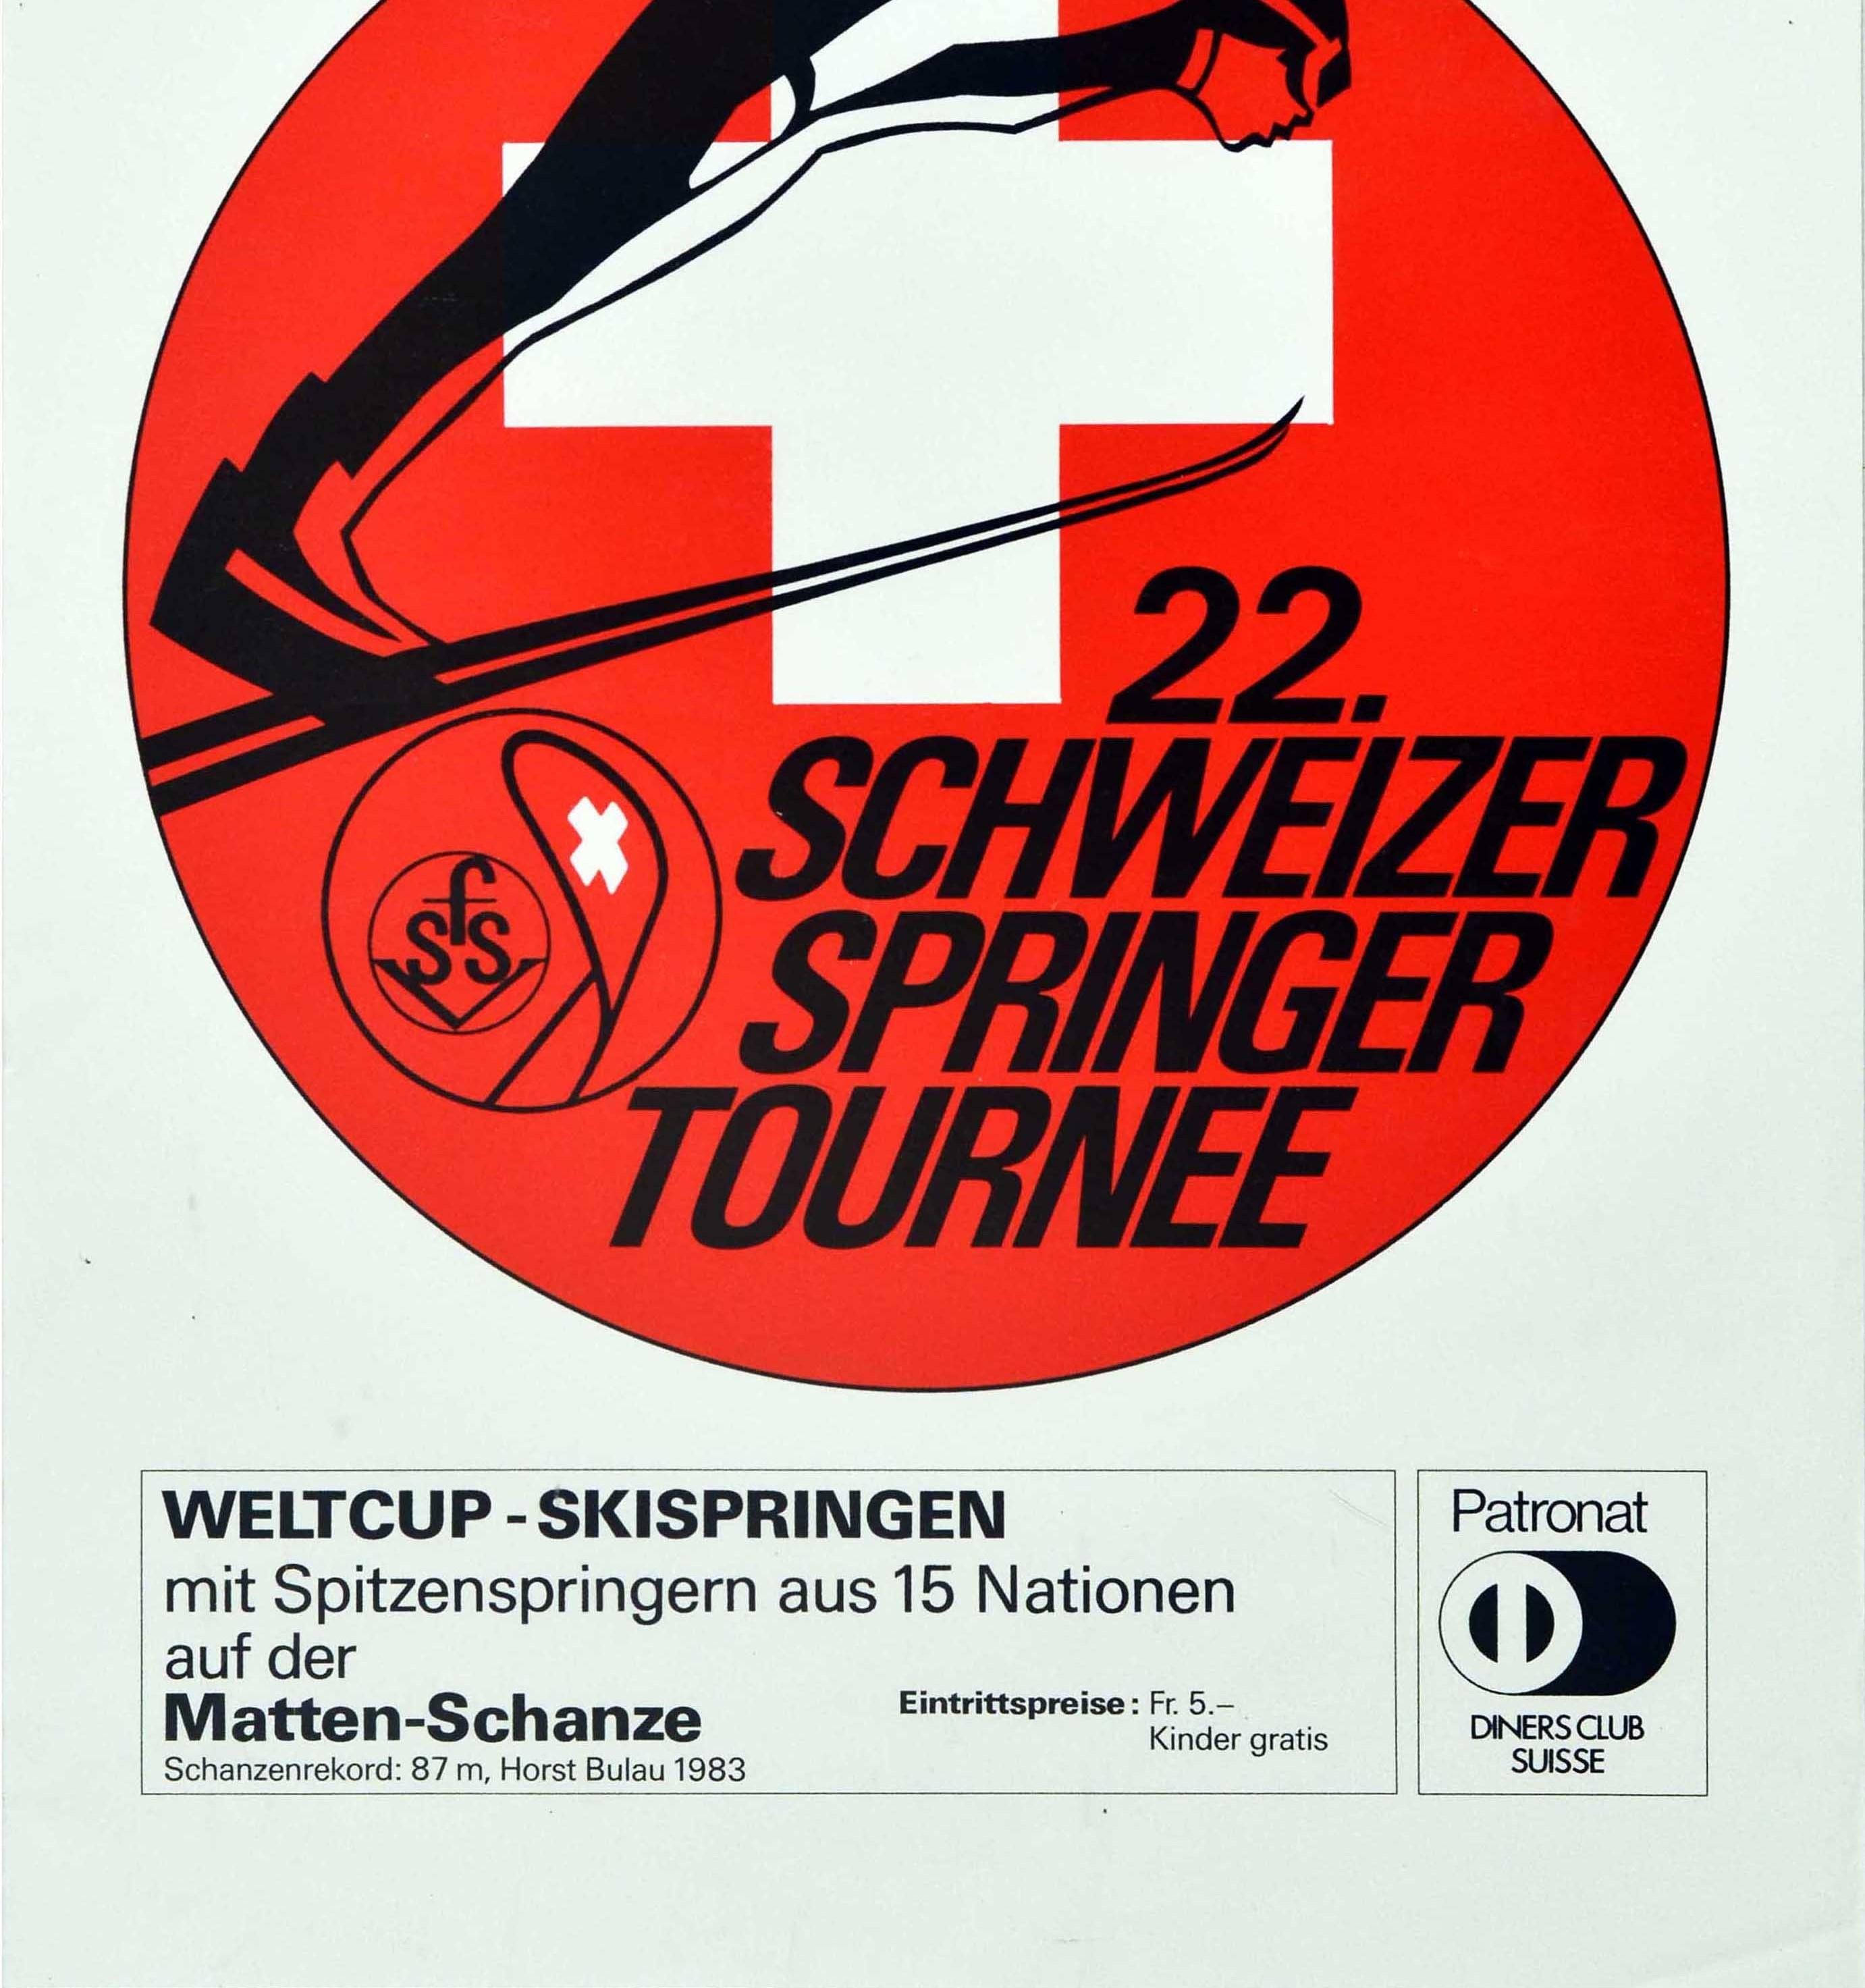 Swiss Original Vintage Winter Sport Poster Gstaad Schweizer Springer Tournee Ski Jump For Sale